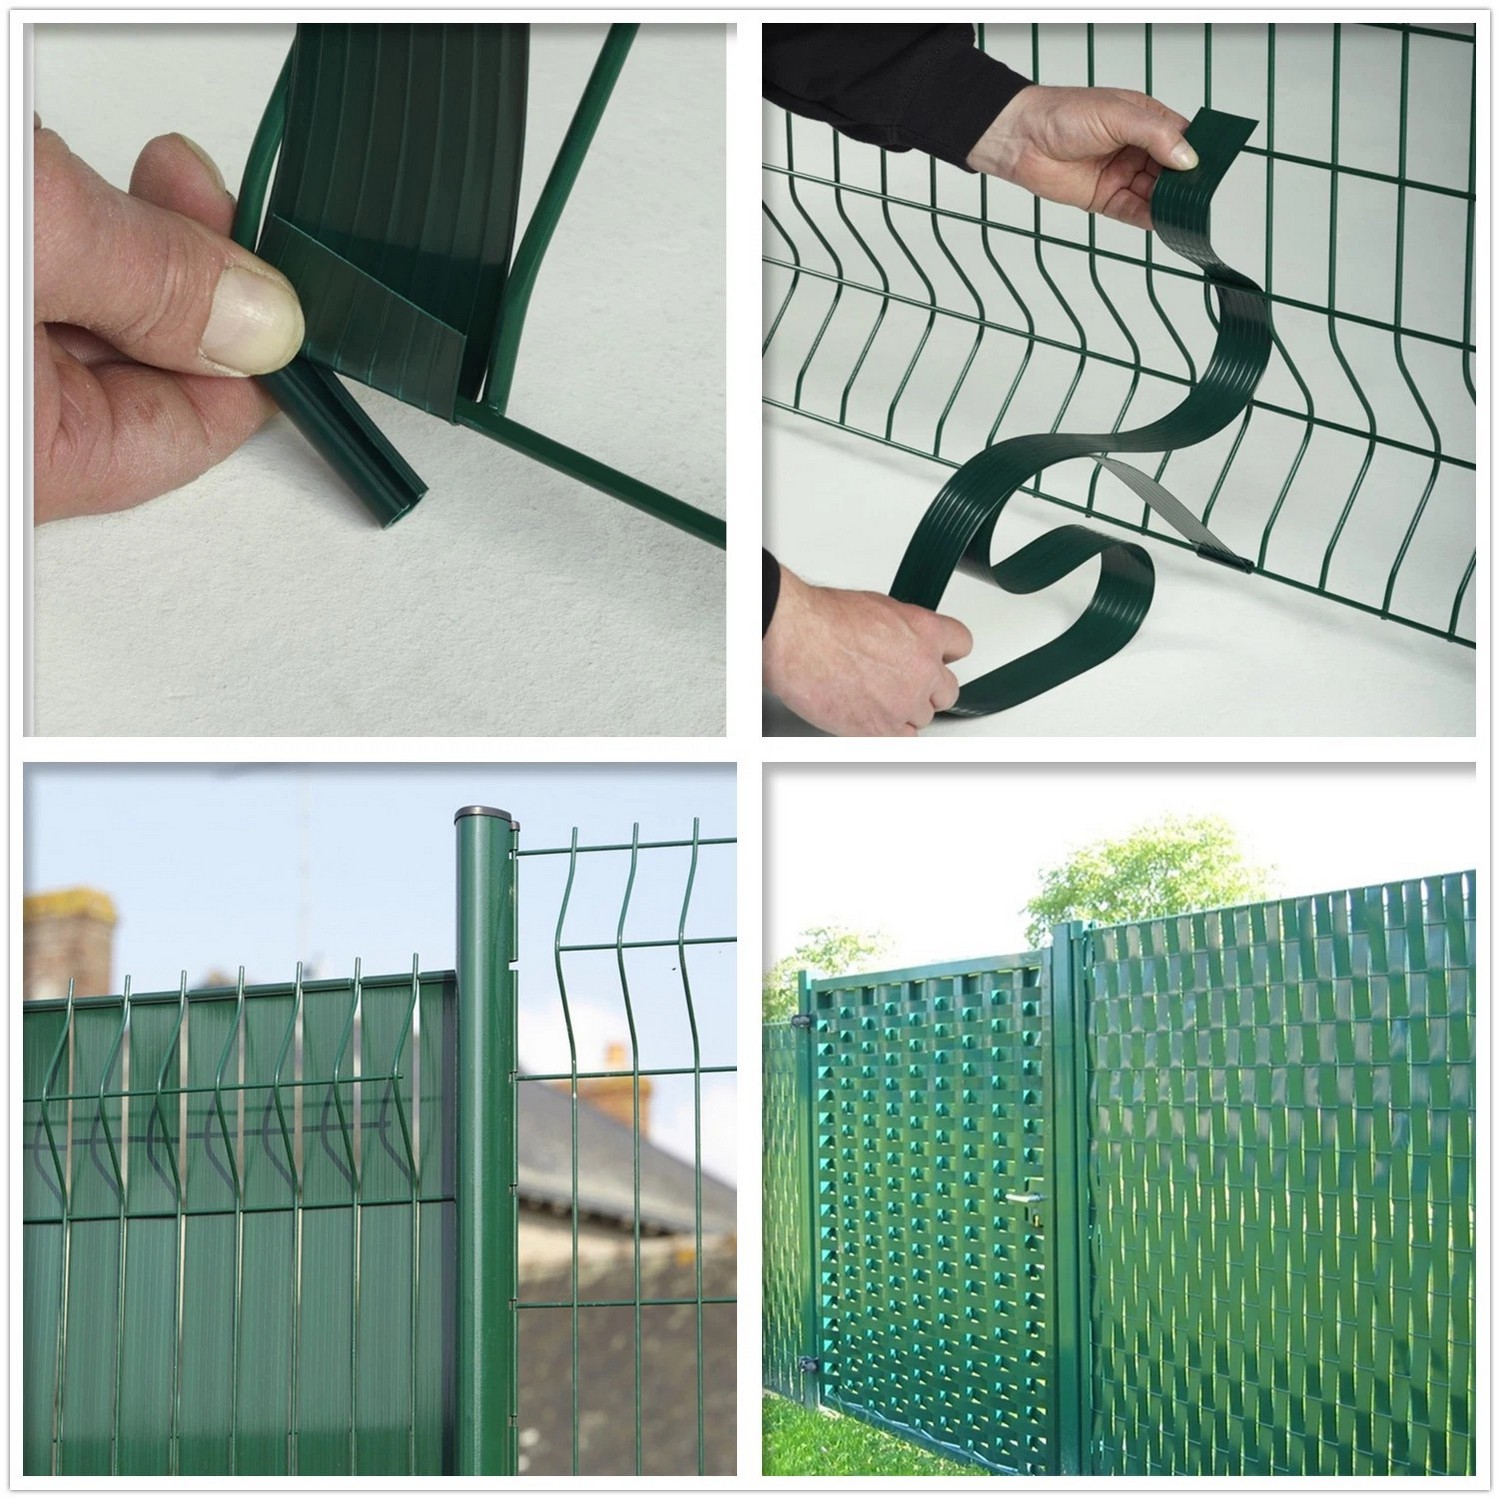 Shirit plastik fleksibël për privatësi pvc për gardh me rrjetë 3d jeshile